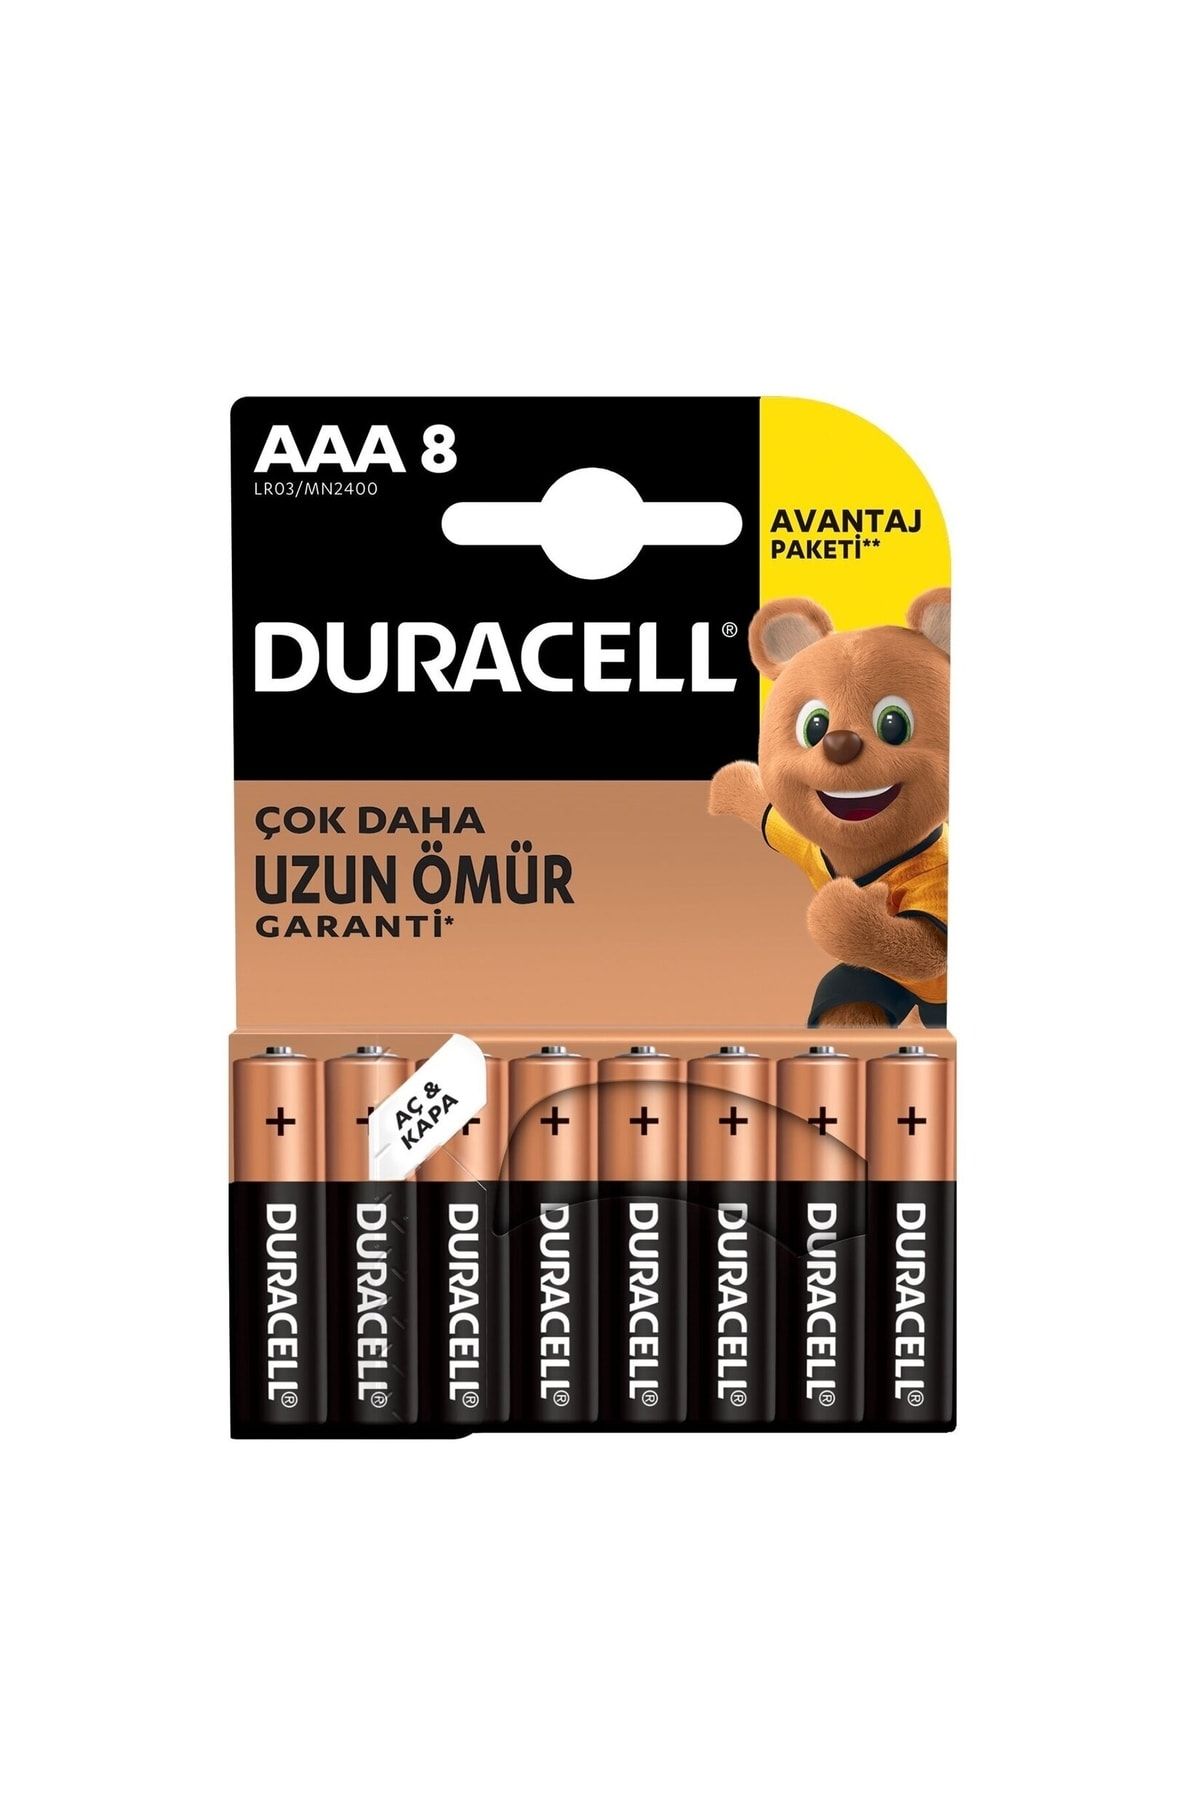 Duracell Alkalin AAA İnce Kalem Piller 8'li Paket